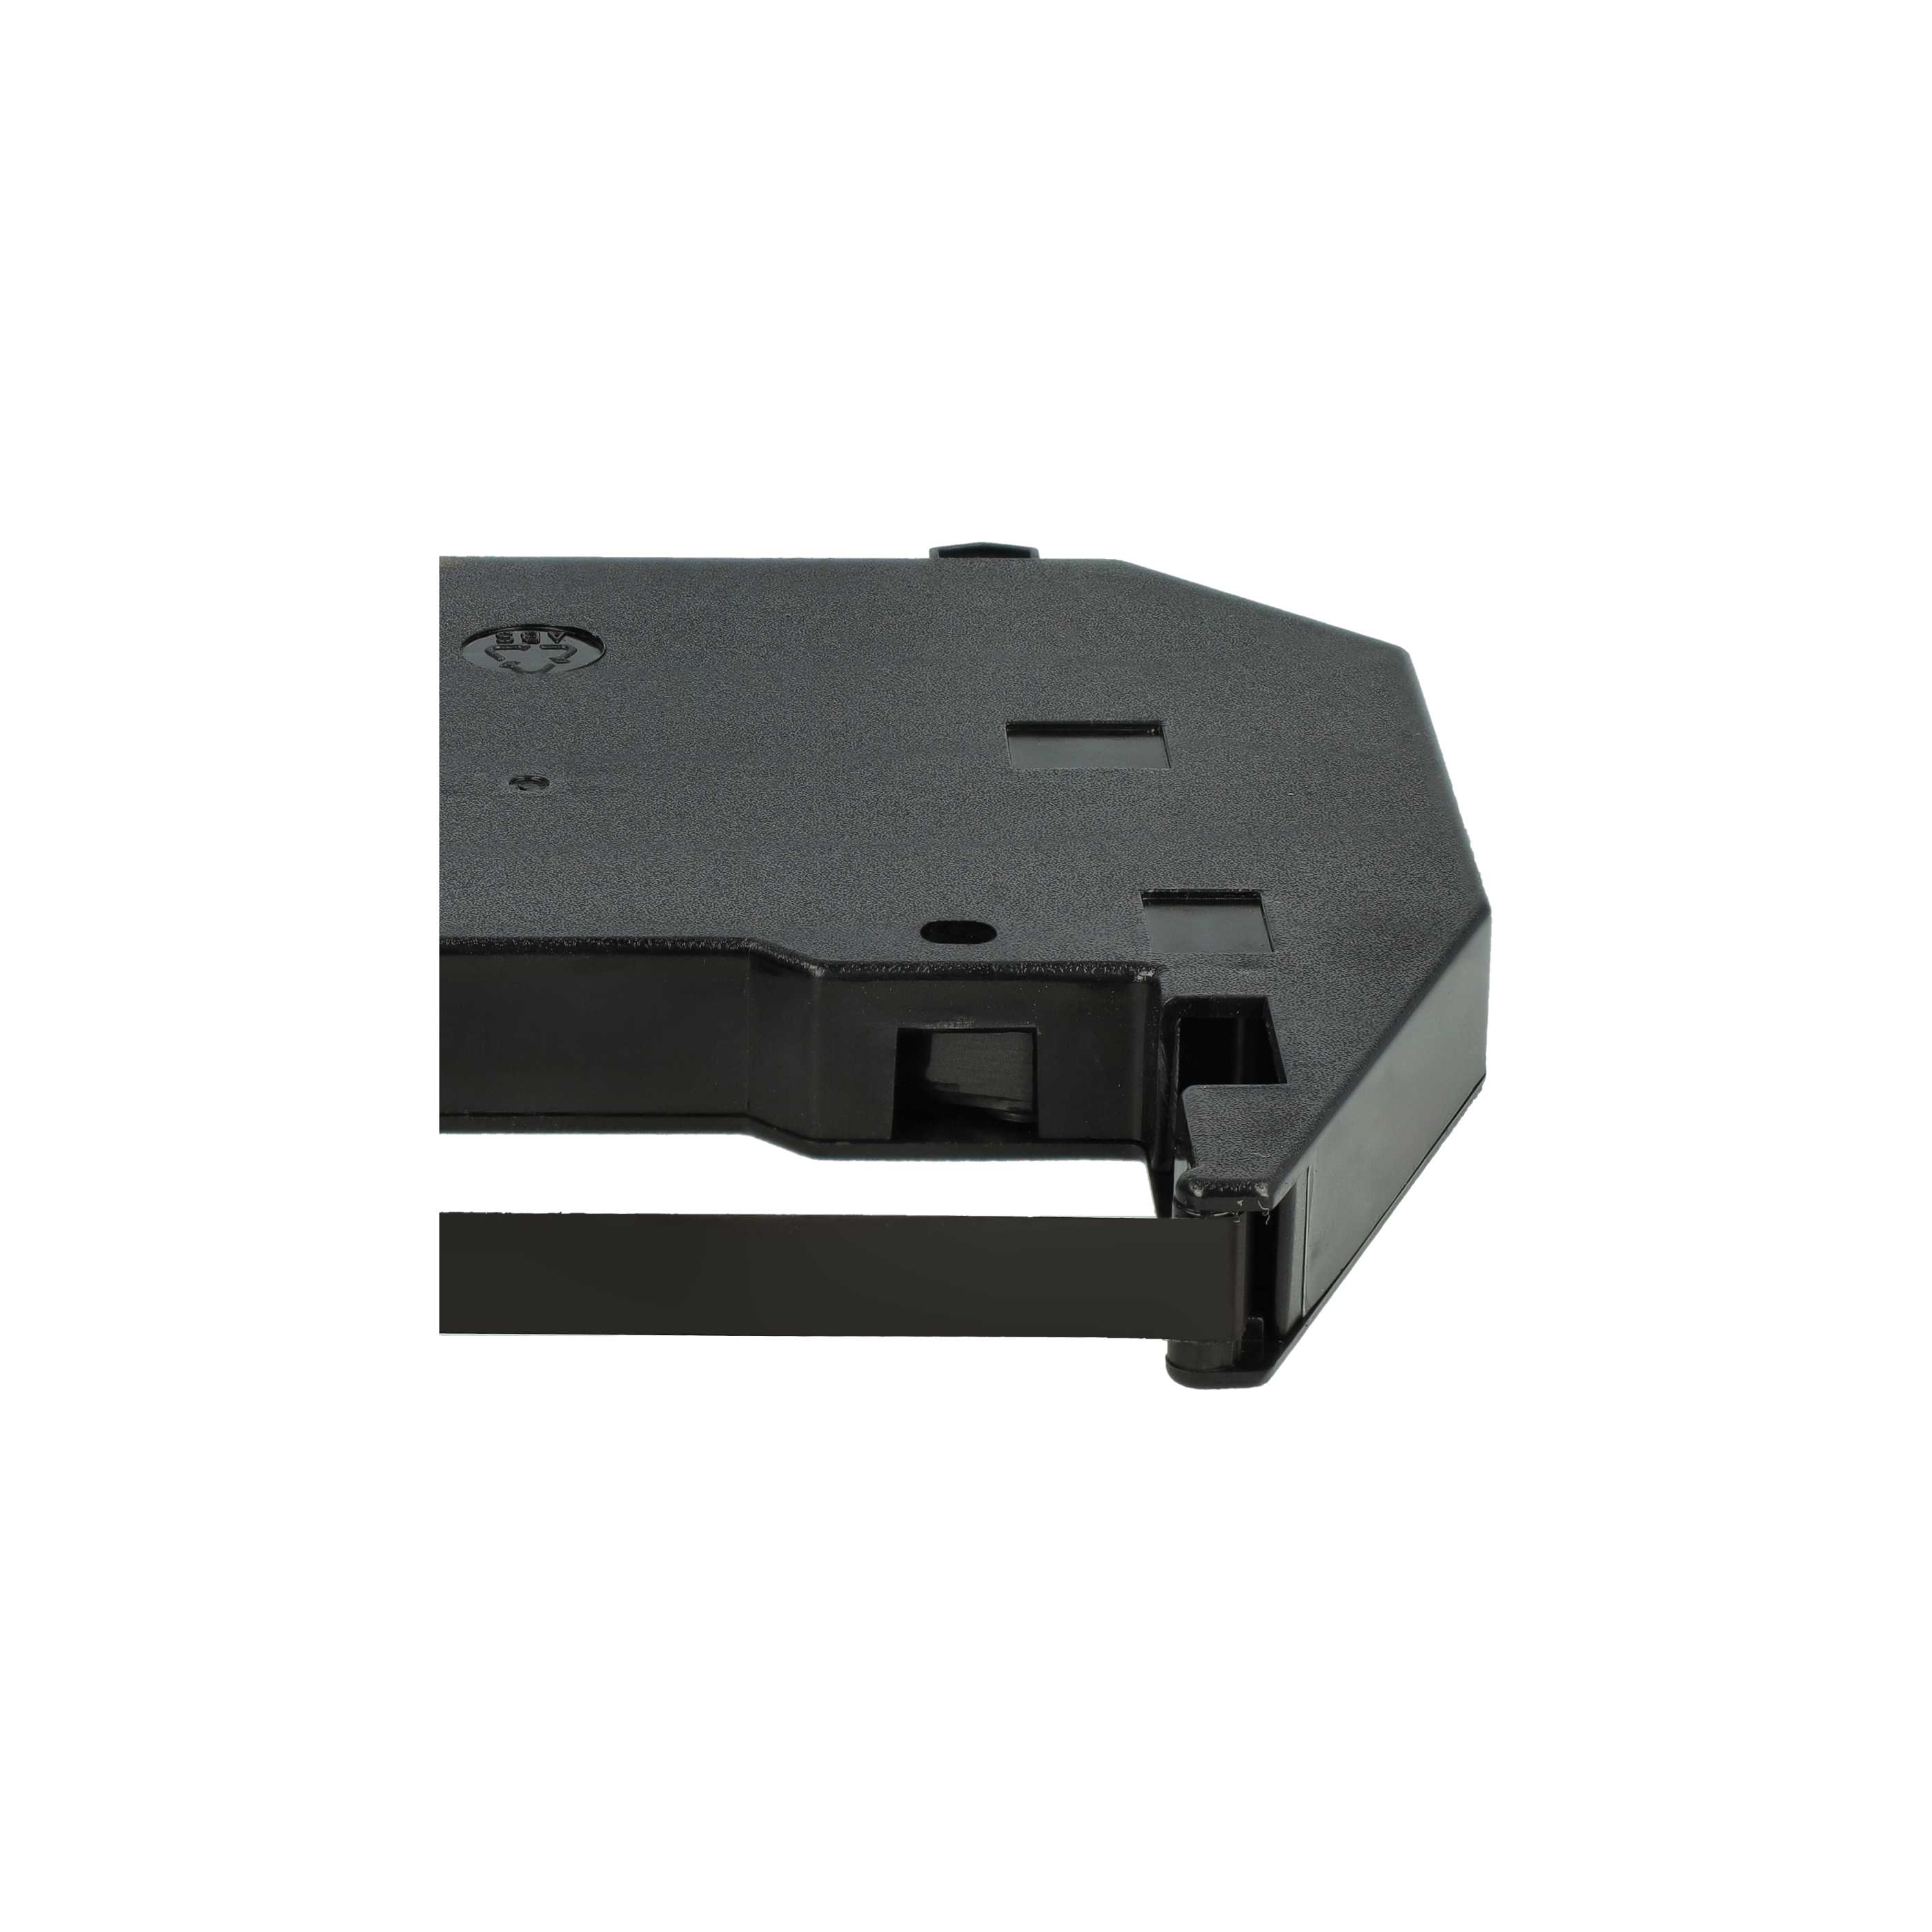 5x Ruban encreur remplace 186c1, F018602 pour imprimante matricielle / étiquette - Carbone, noir